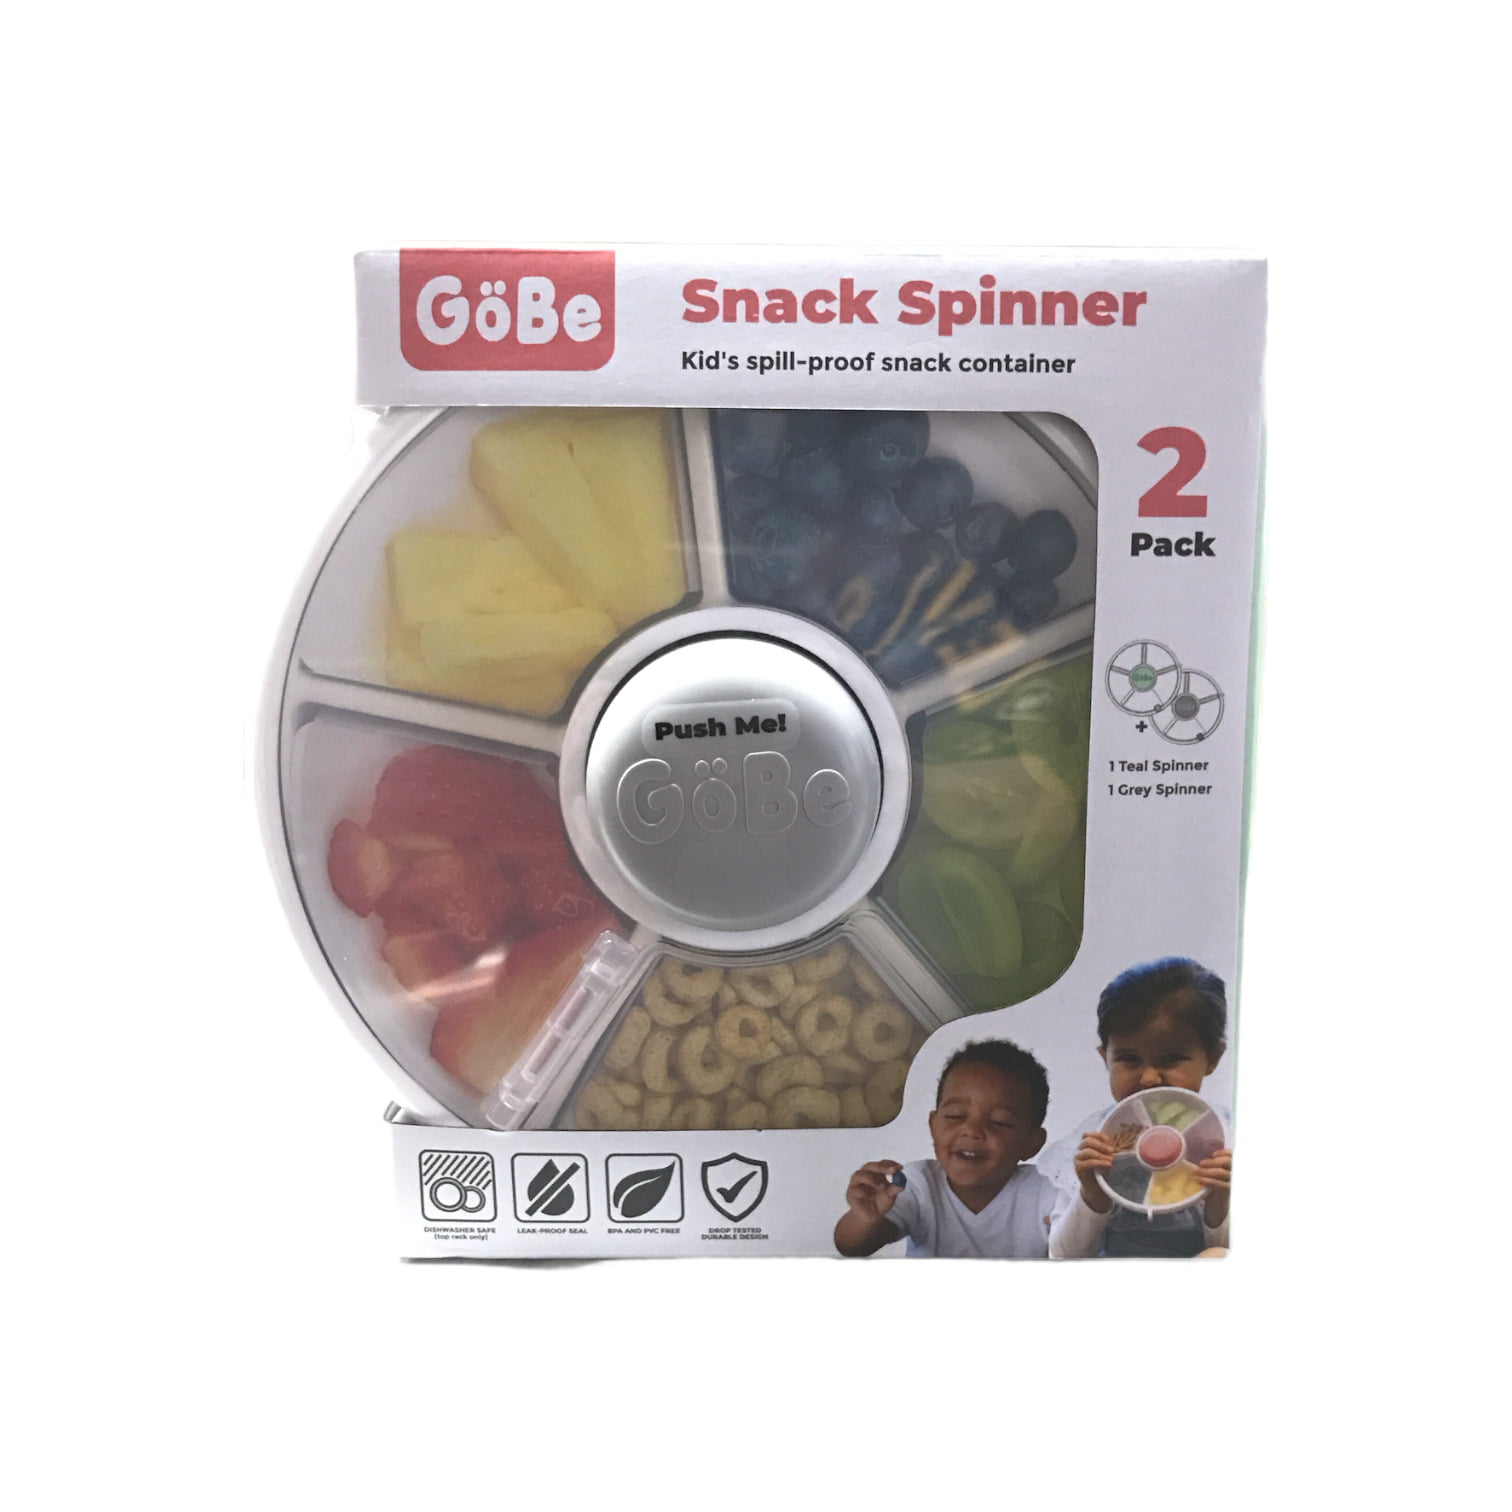 Gobe - Snack Spinner, Grey